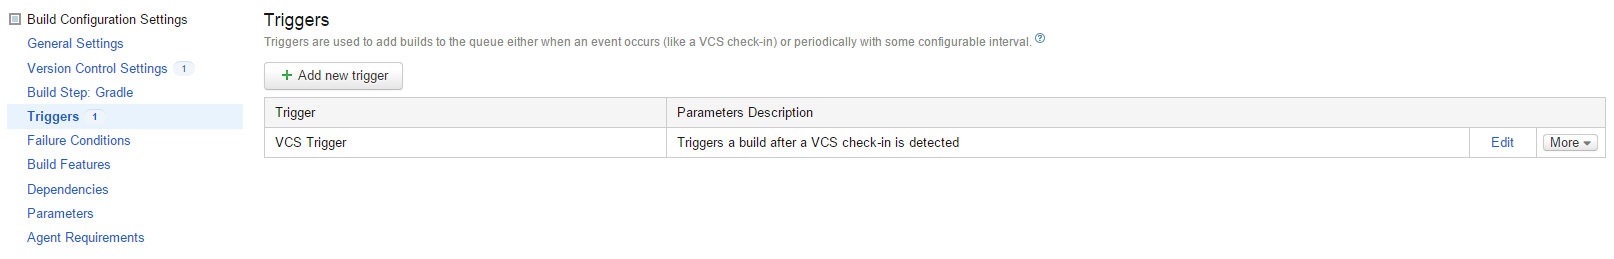 VCS Trigger